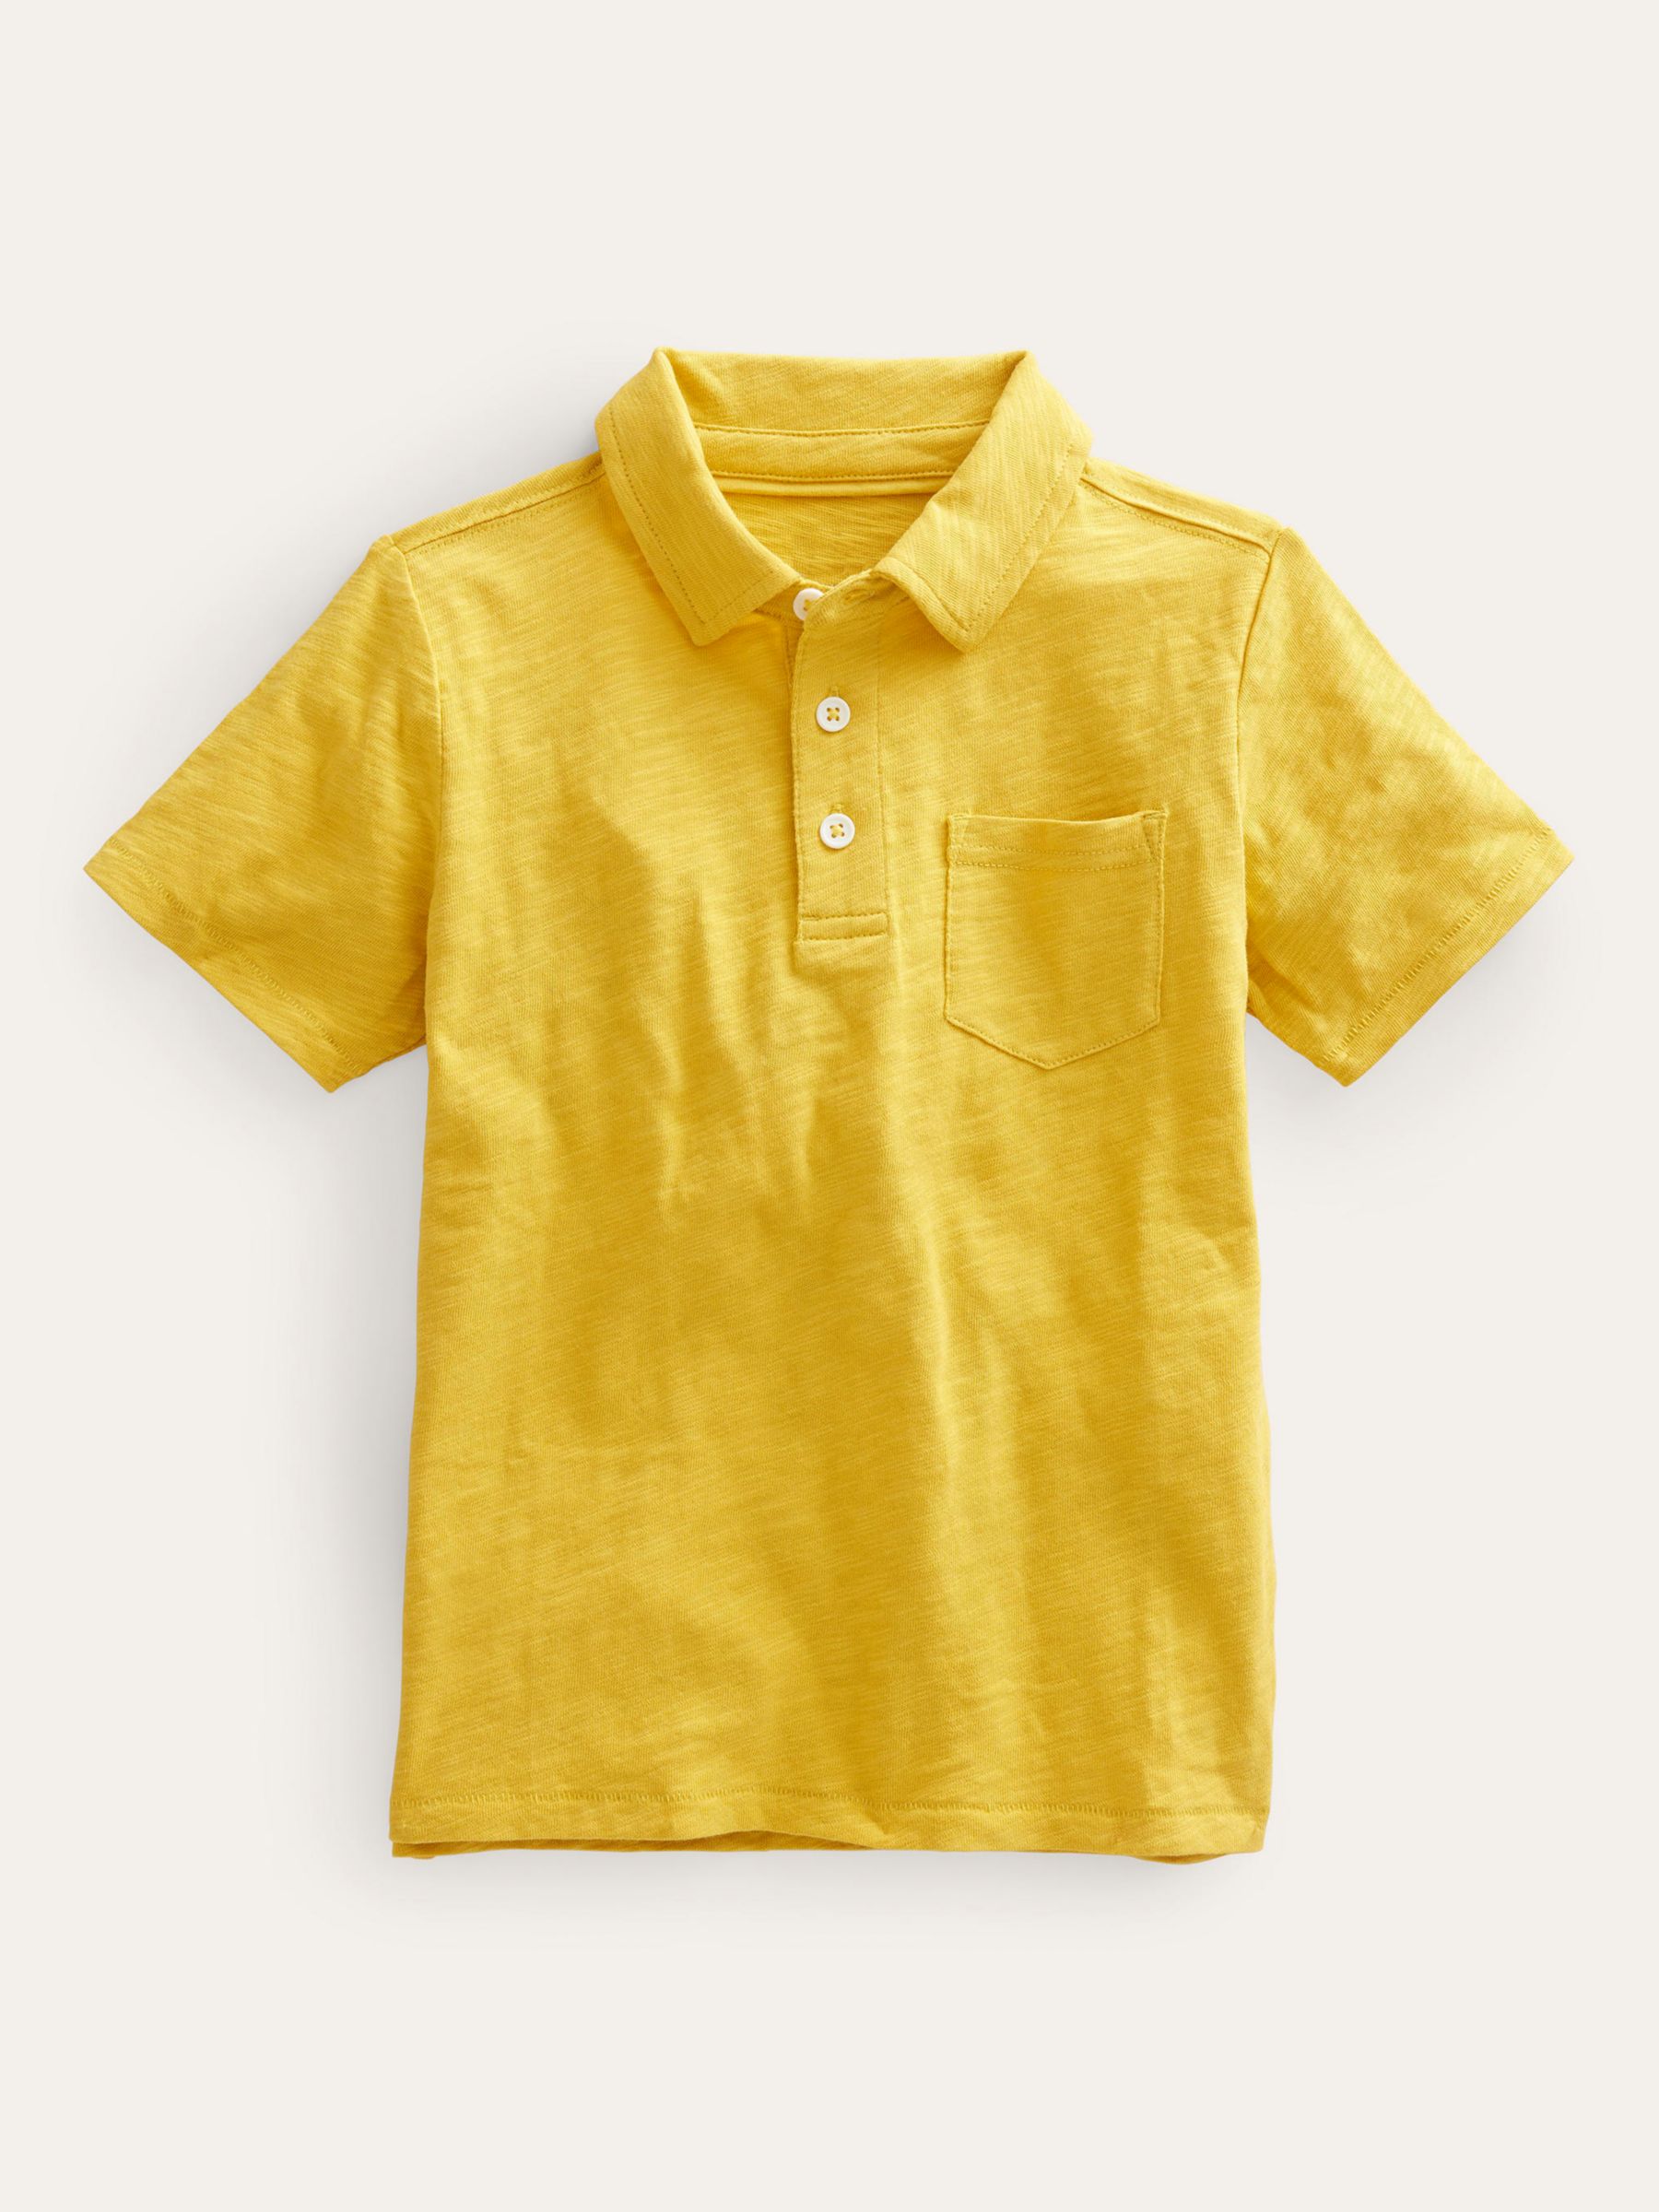 Boden, Tops, Boden Mustard Yellow Button Down Jersey Shirt